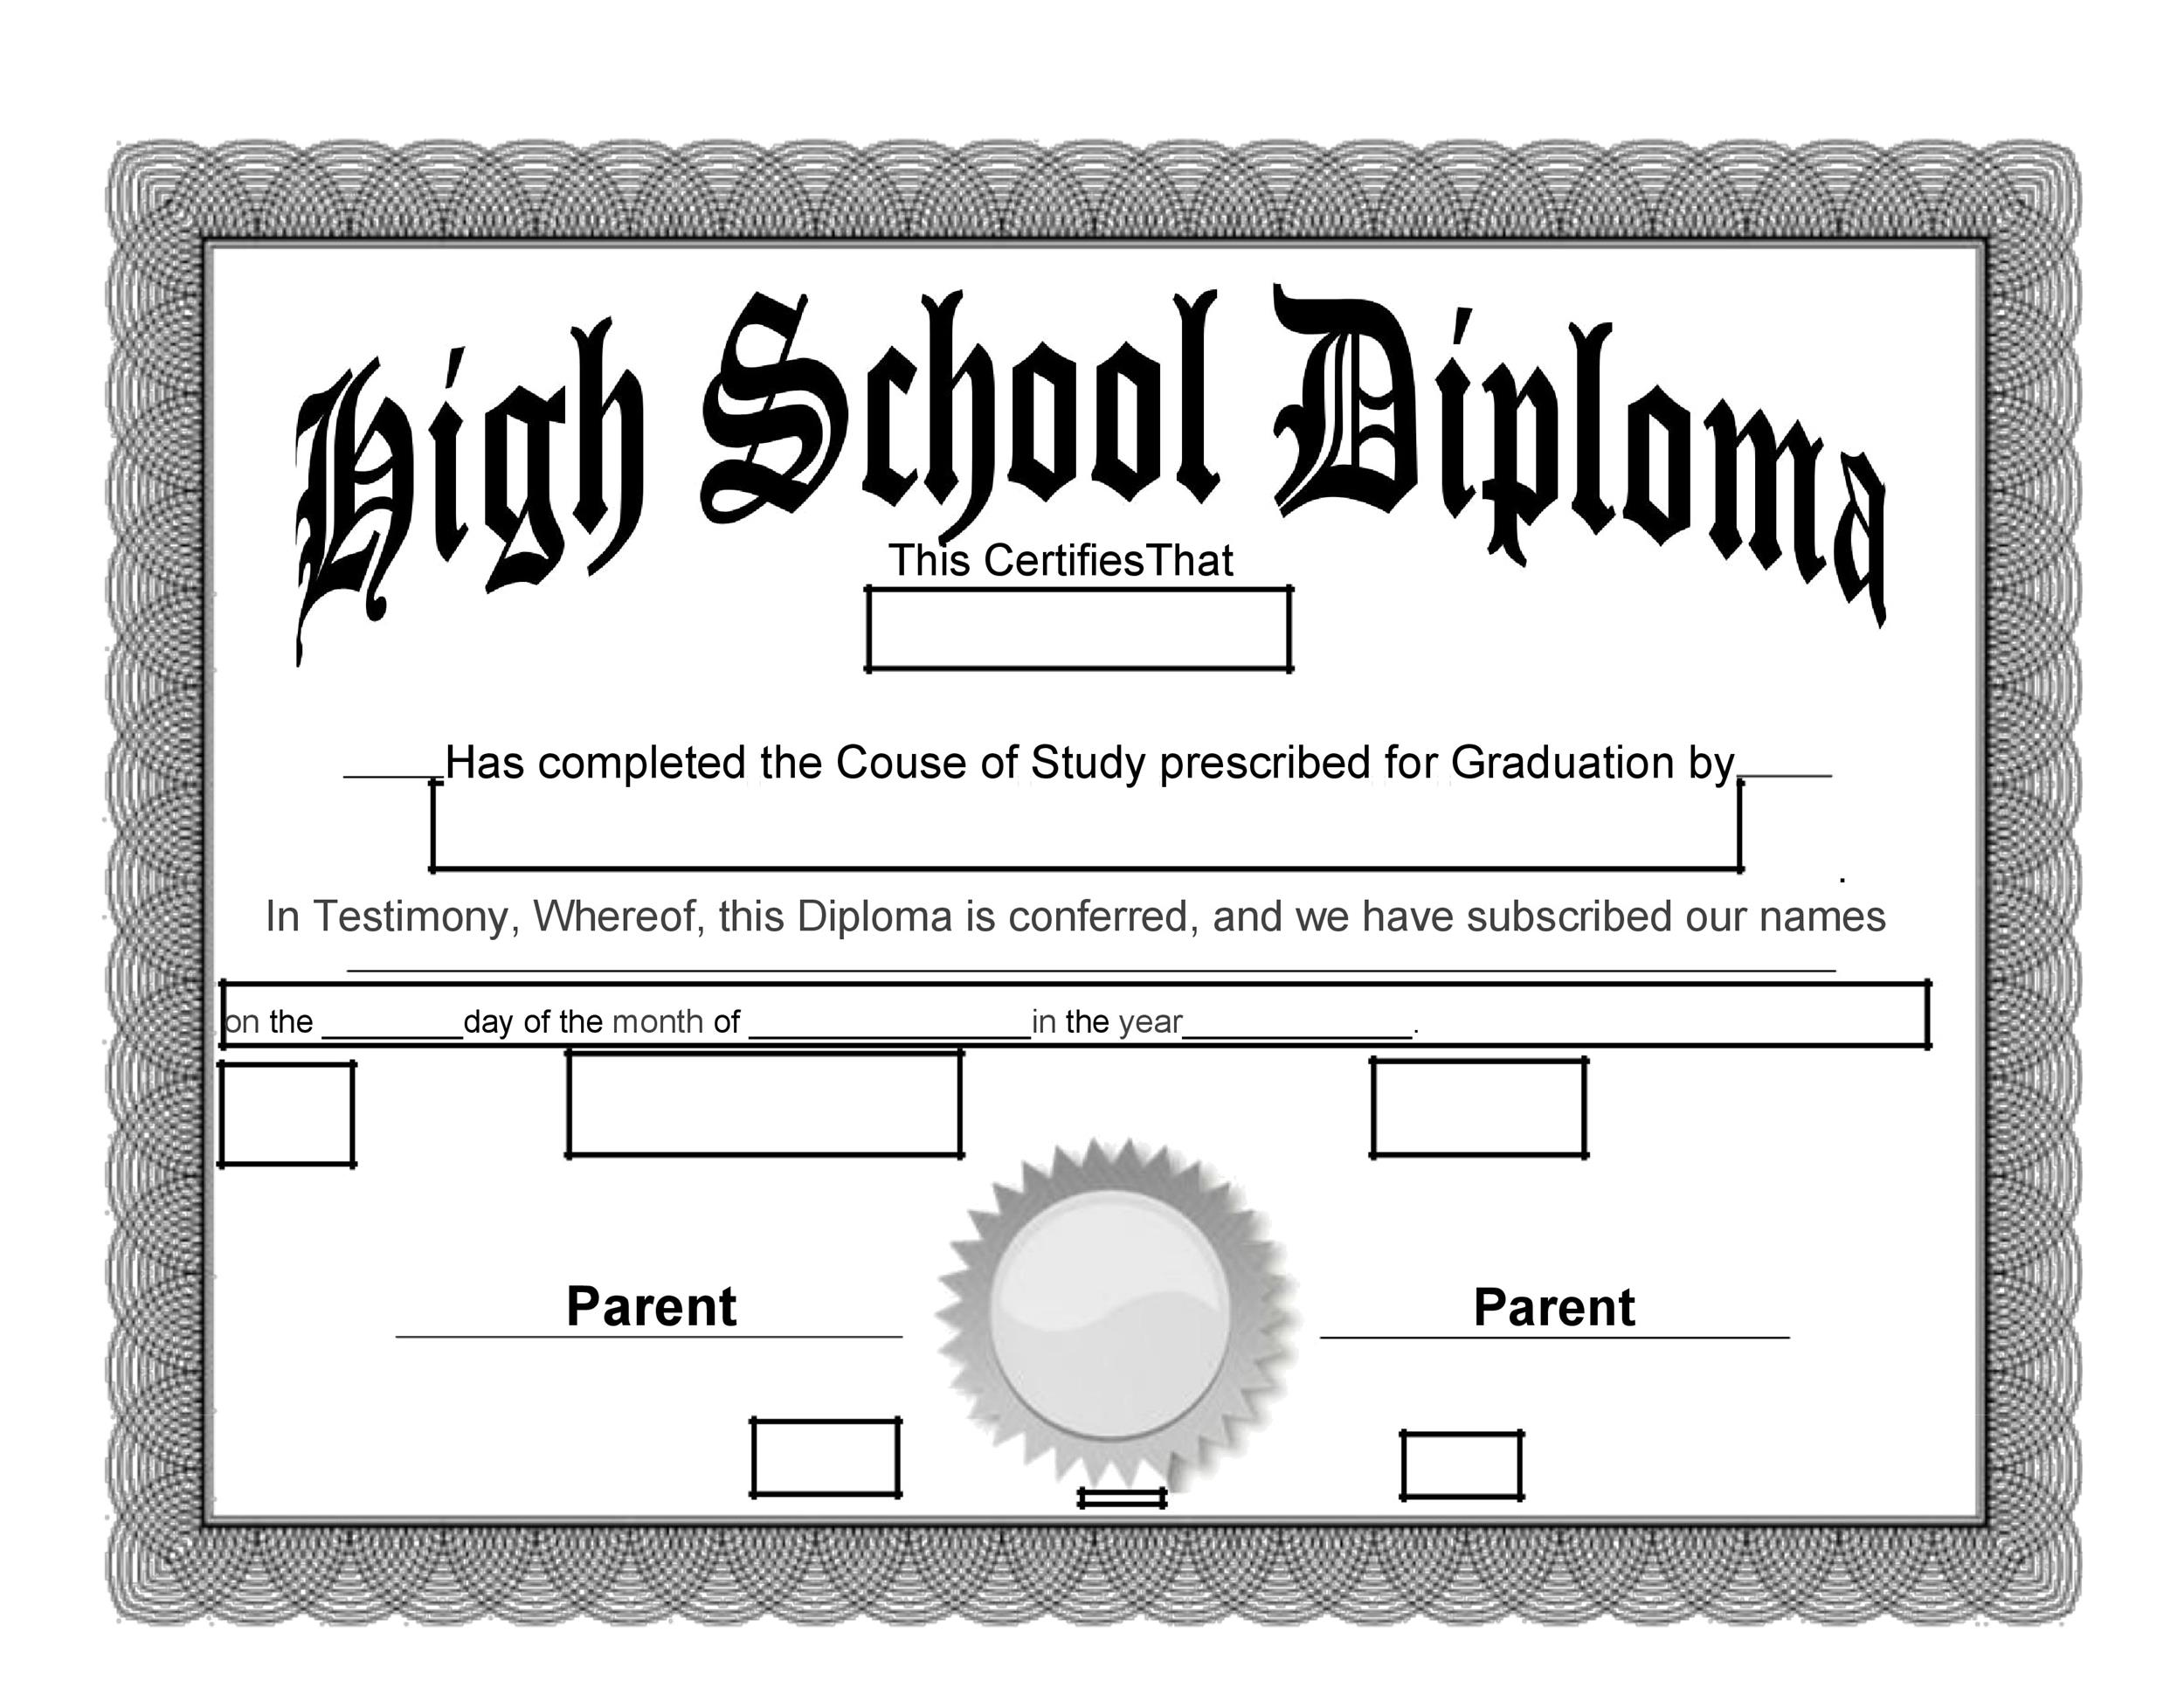 school-certificate-samples-10-free-printable-word-pdf-formats